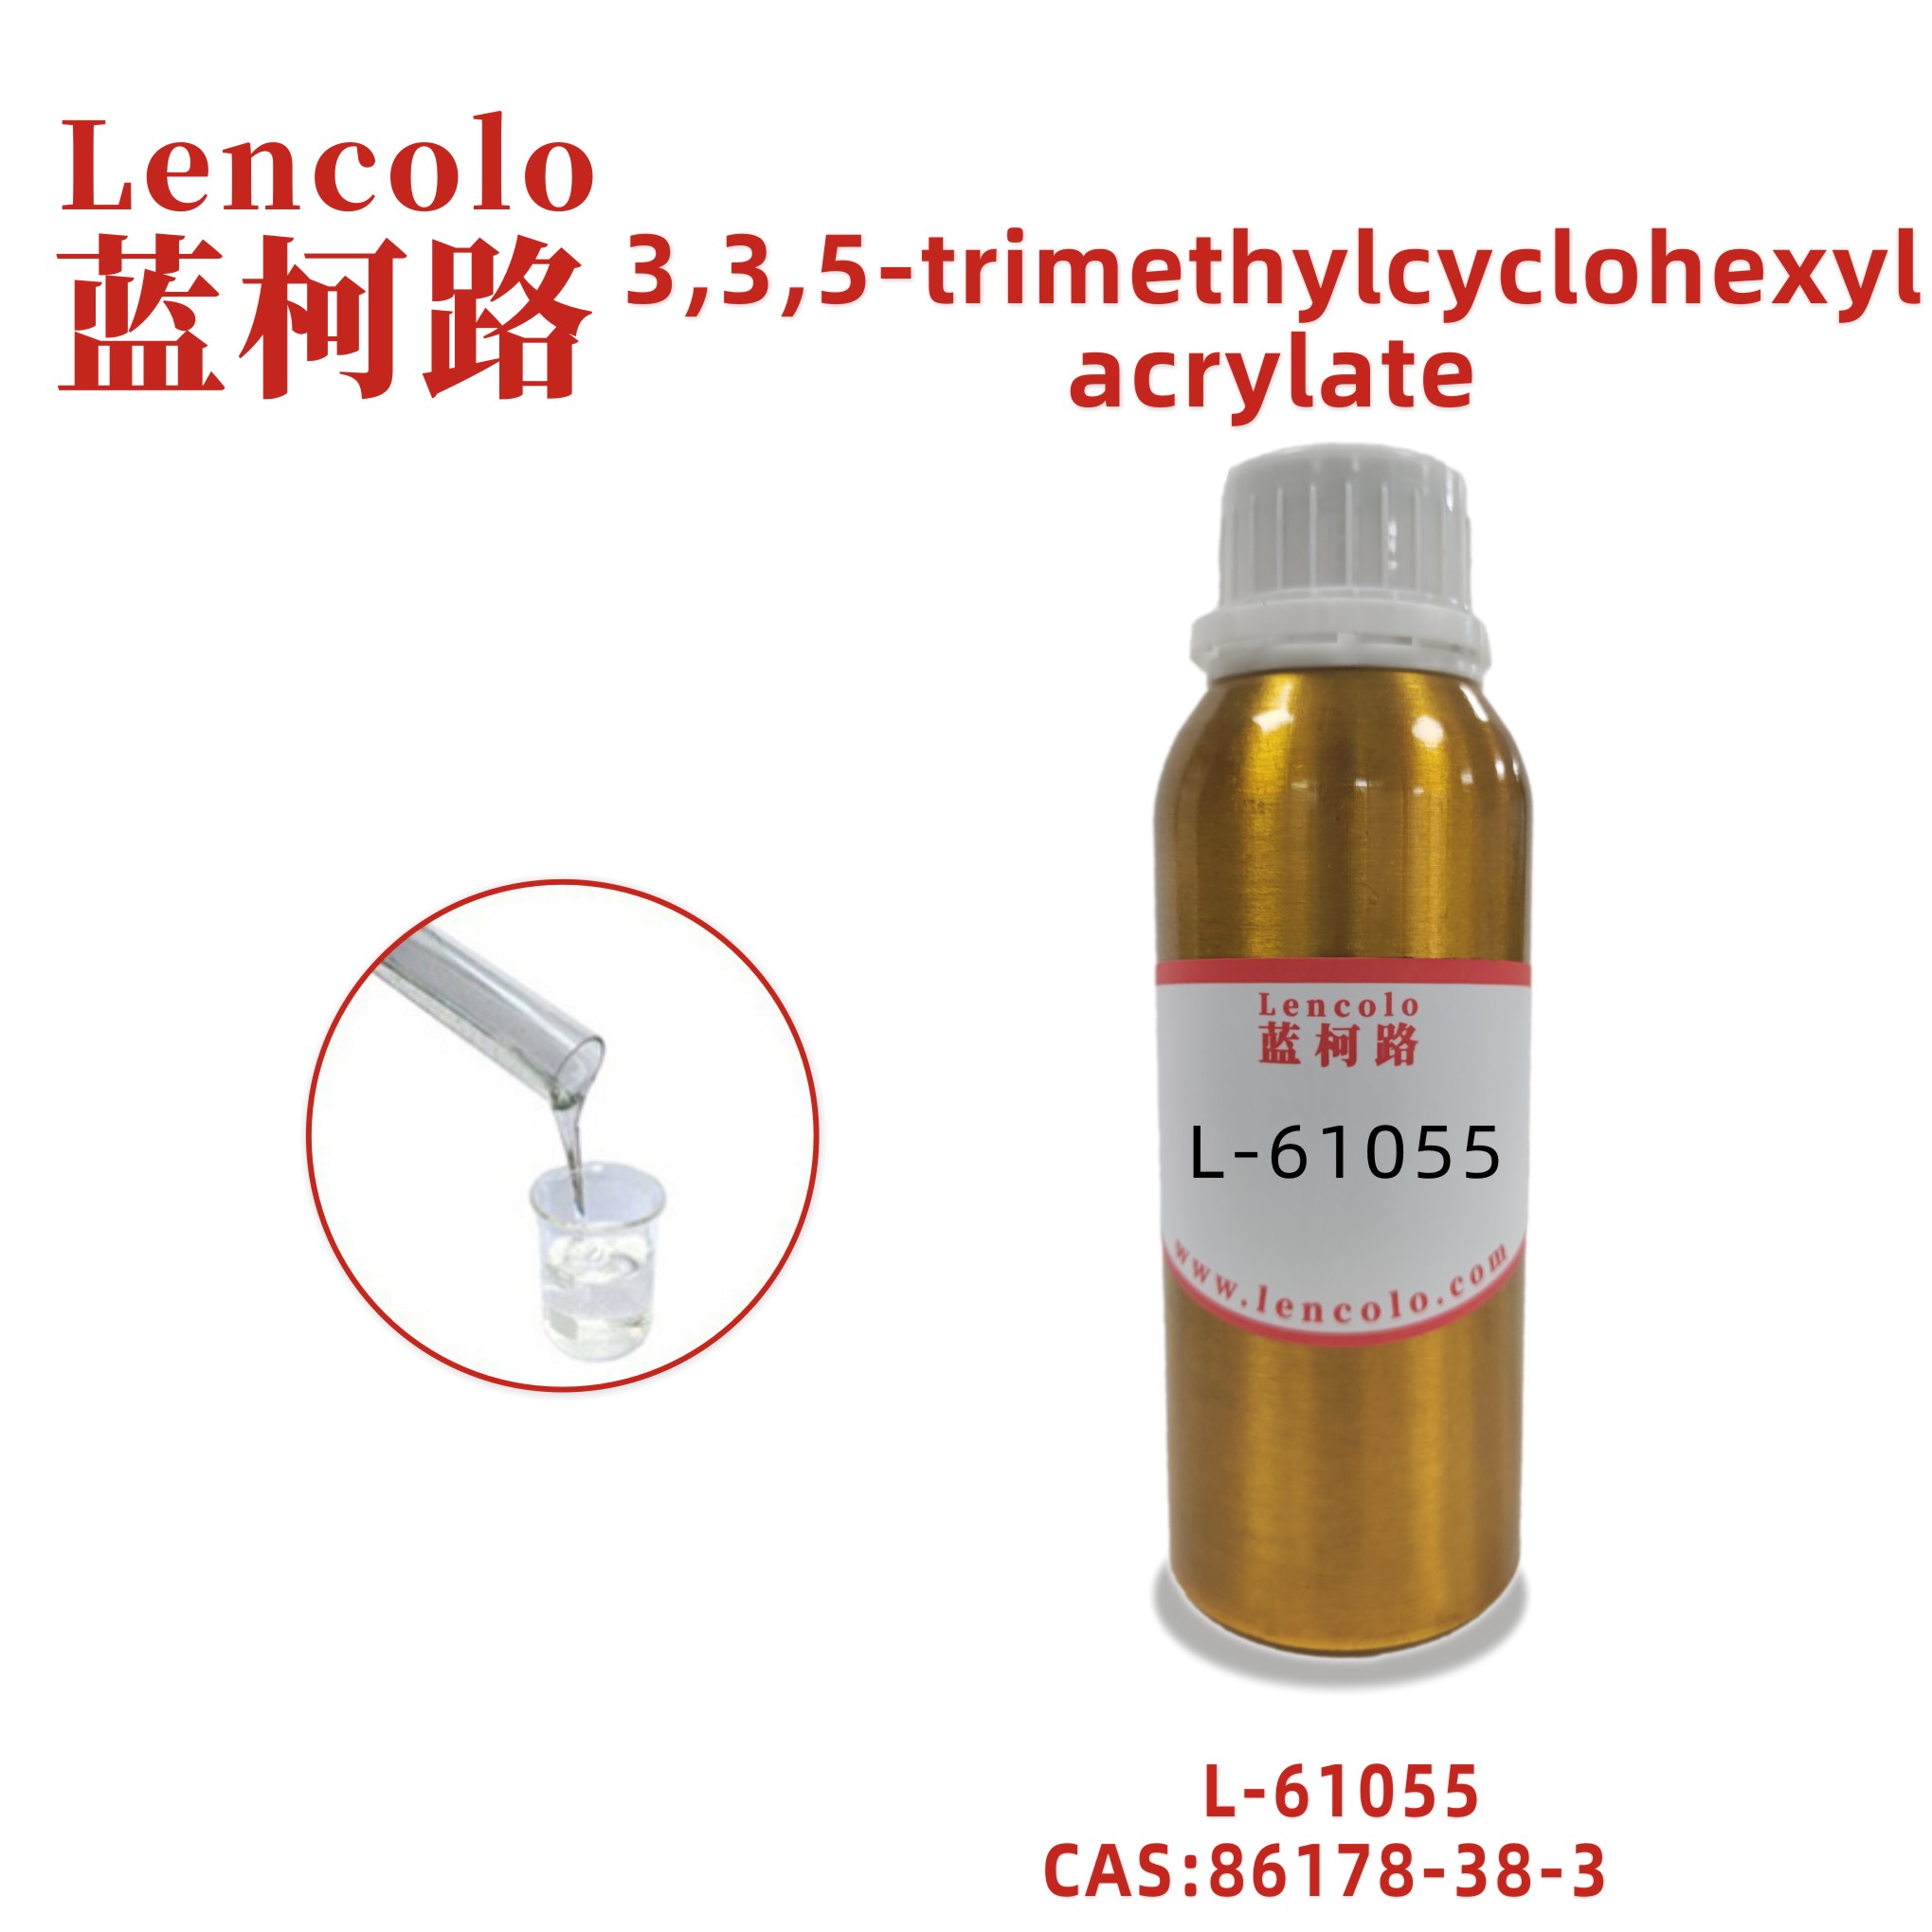 L-61055 (TMCHA) 3,3,5-trimethylcyclohexyl acrylate